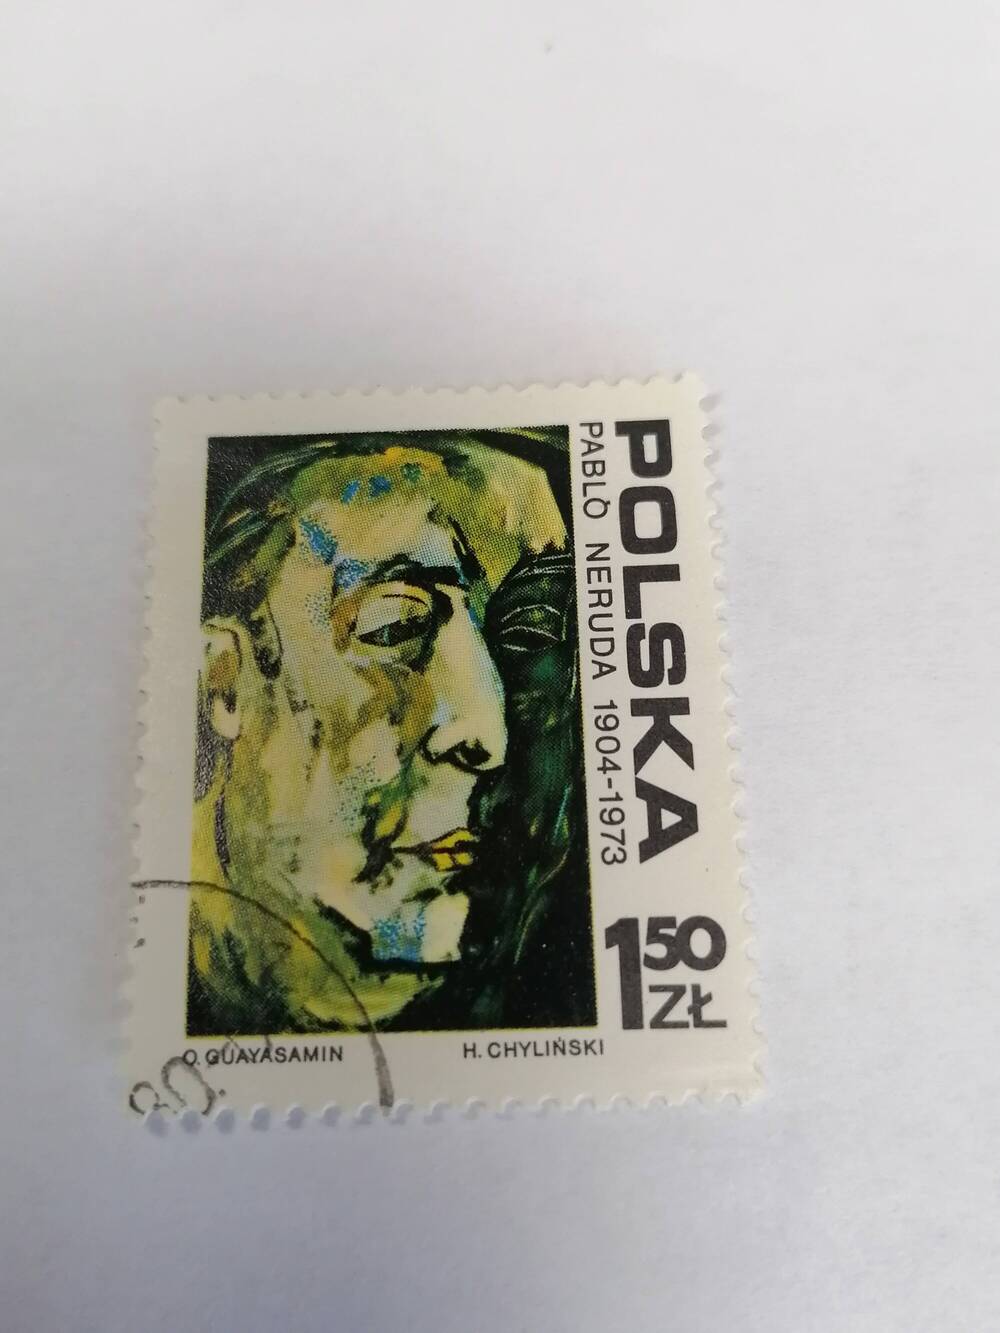 Марка почтовая гашеная, Polska,Польша,1974г,Pablo Neruda 1904-1973